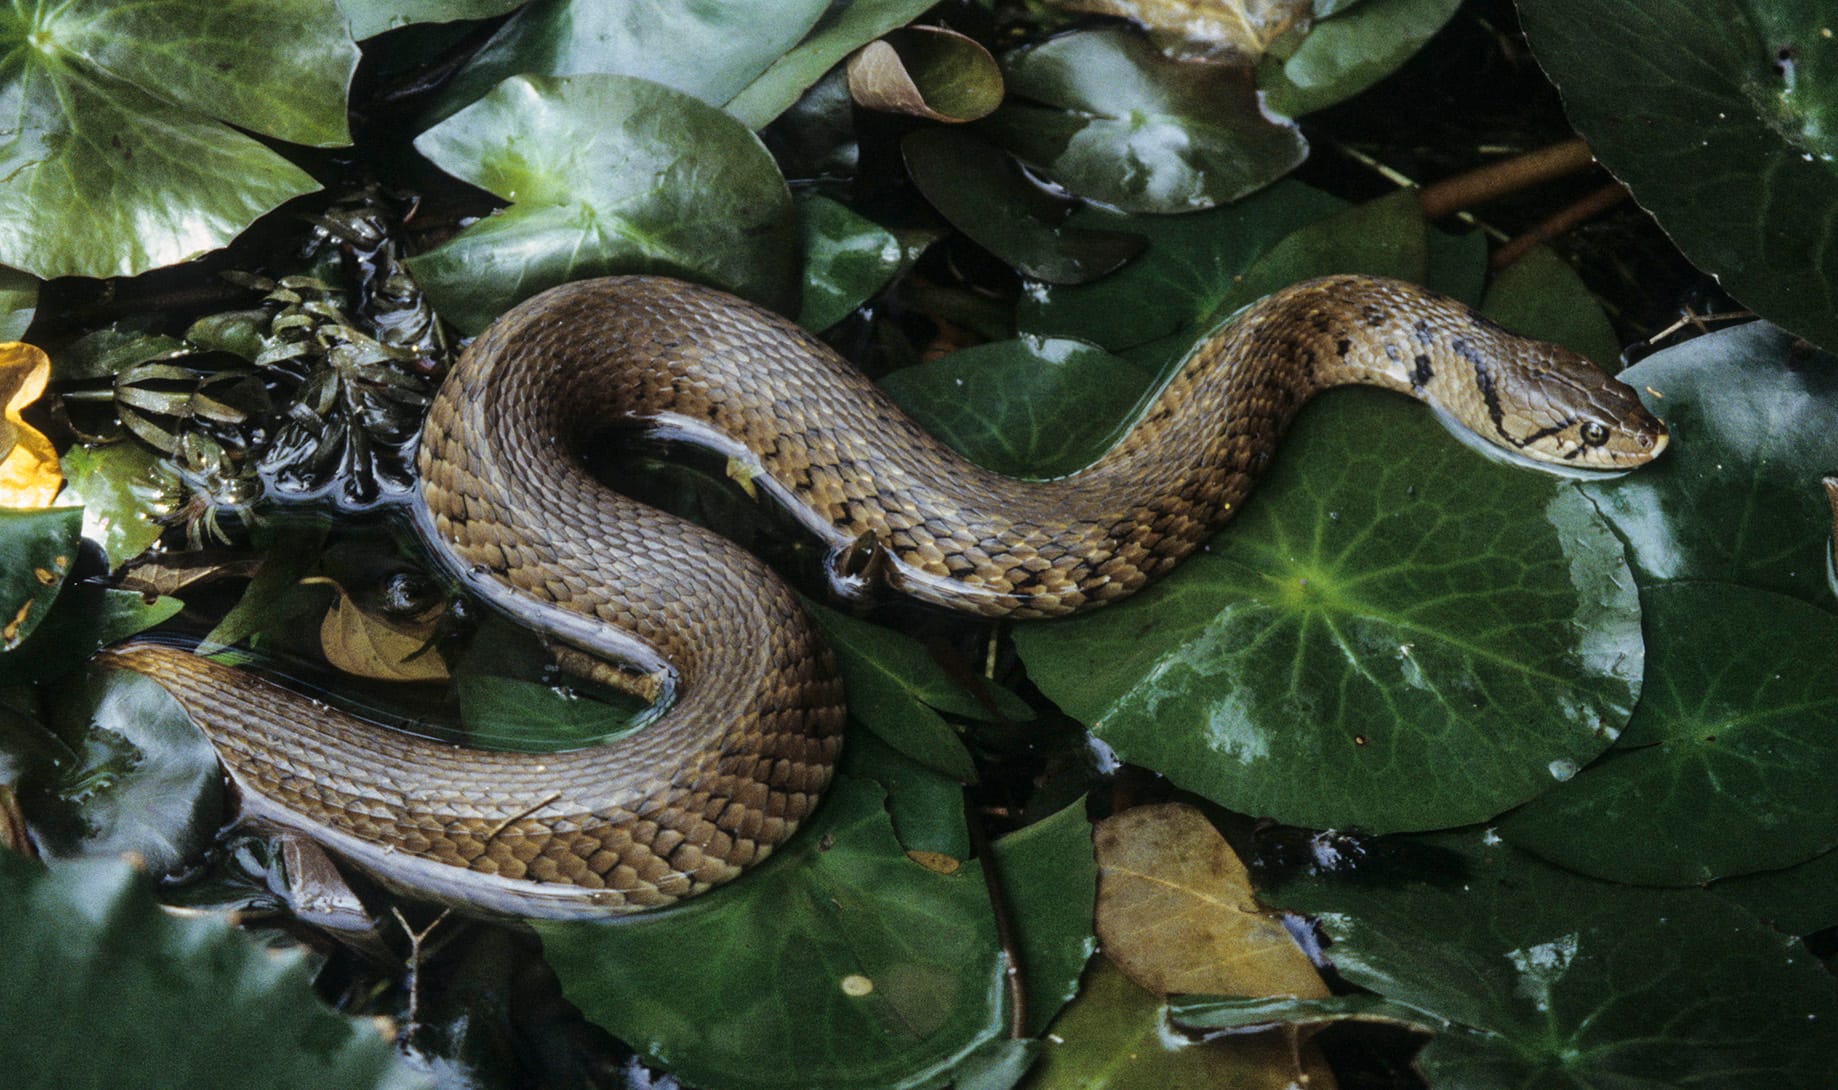 Aquatic Snakes, Diversity and Natural History